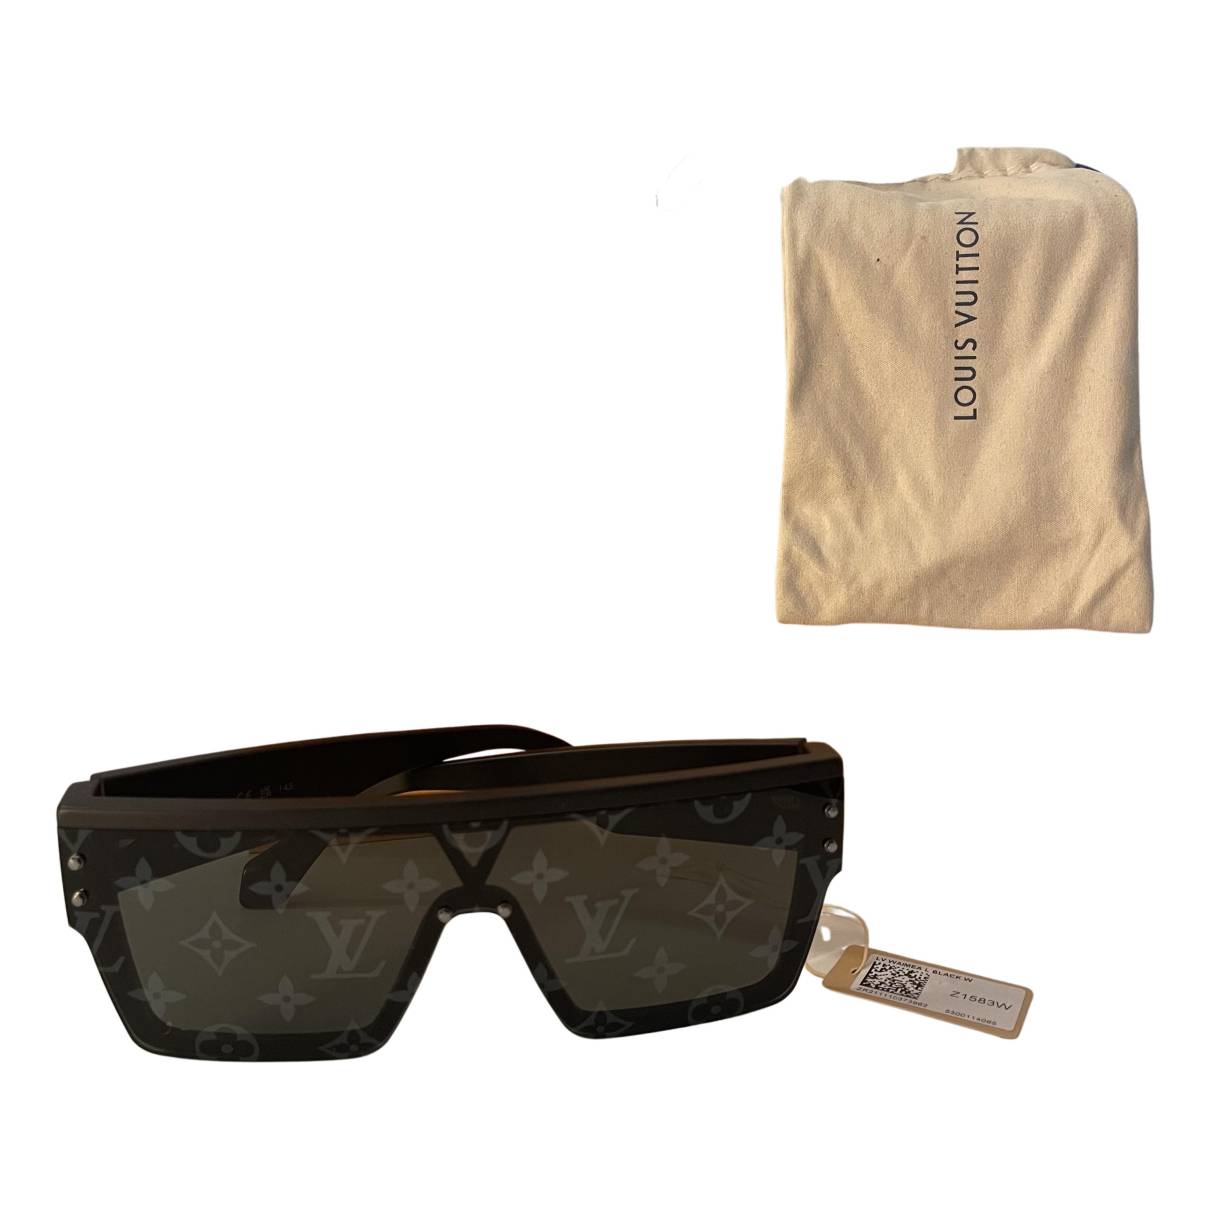 Louis Vuitton LV Monogram Square Sunglasses